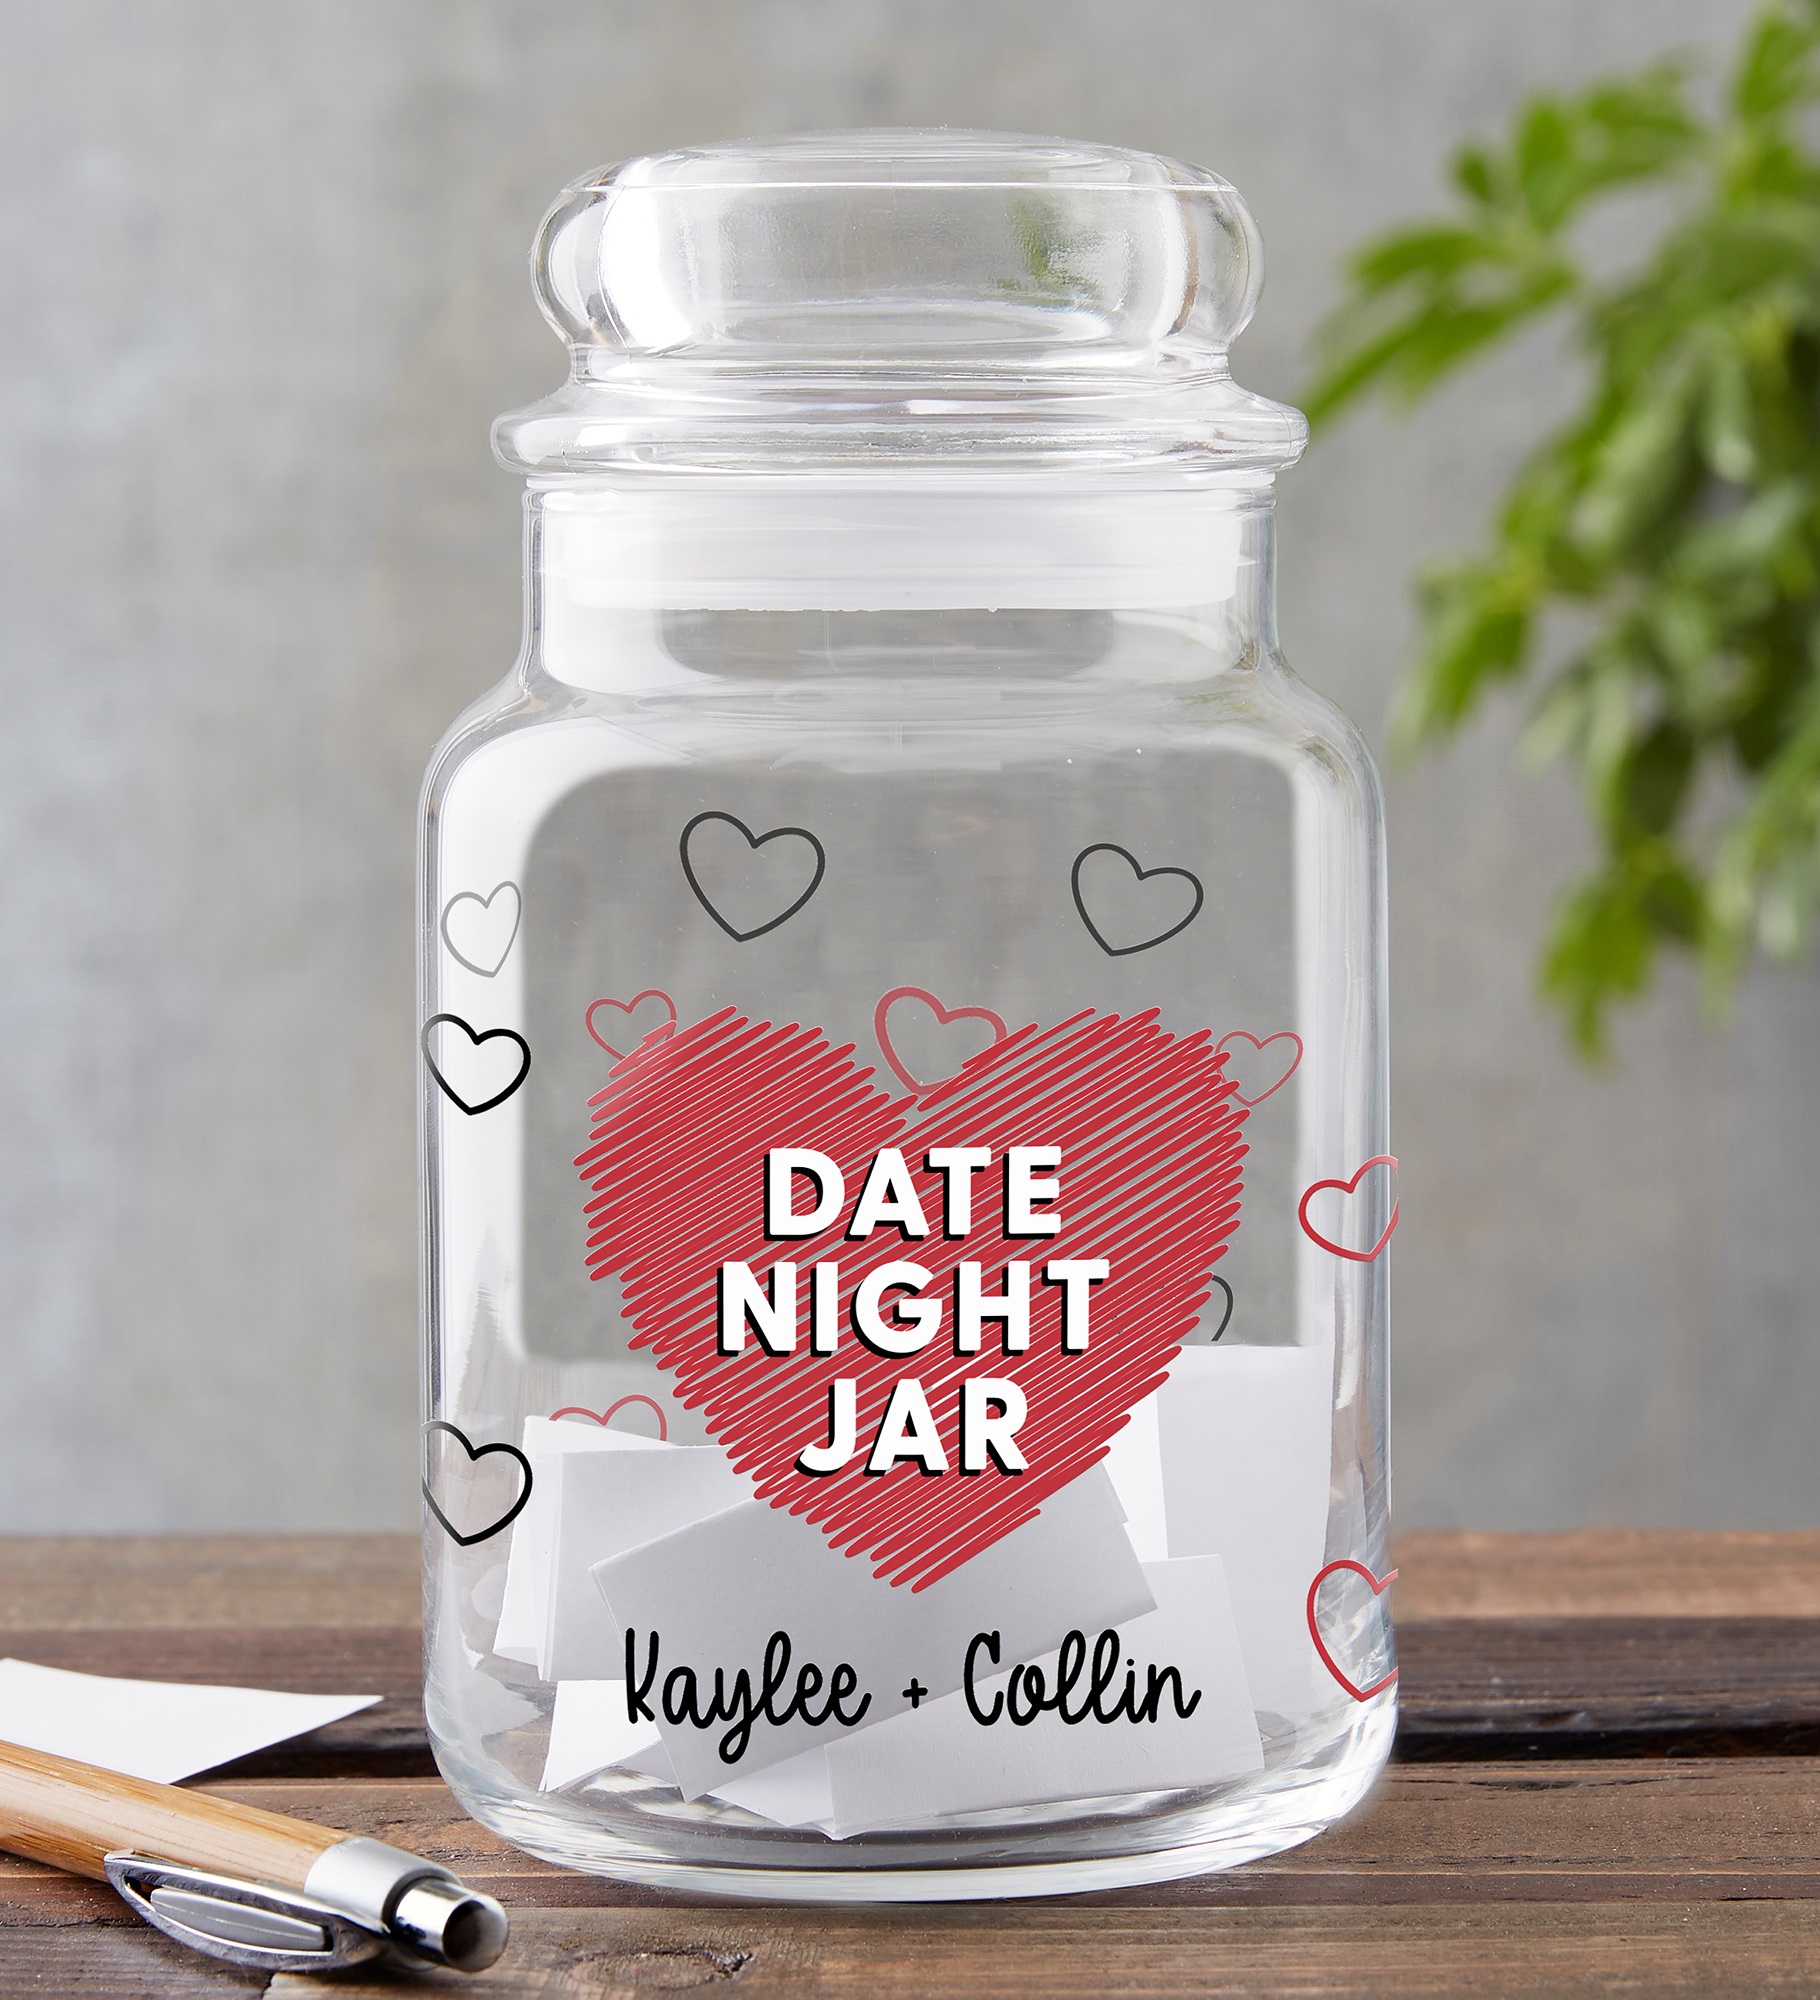 Date Night Personalized Glass Storage Jar